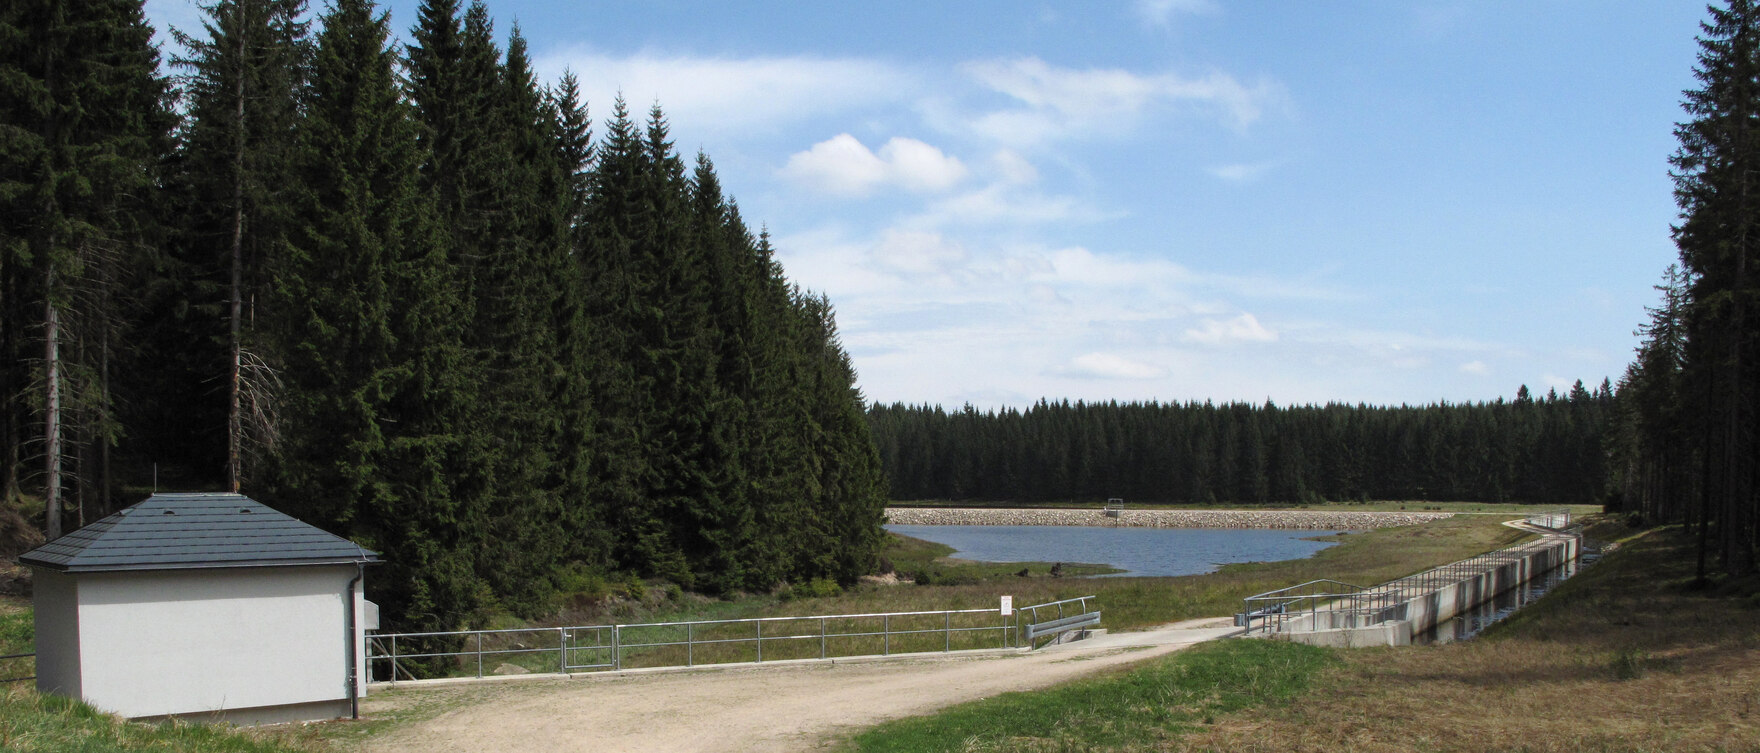 Blick auf einen Sandweg, links daneben steht ein kleines Gebäude vor einem Wald, am Ende des Weges befindet sich Wasser, darüber blauer Himmel